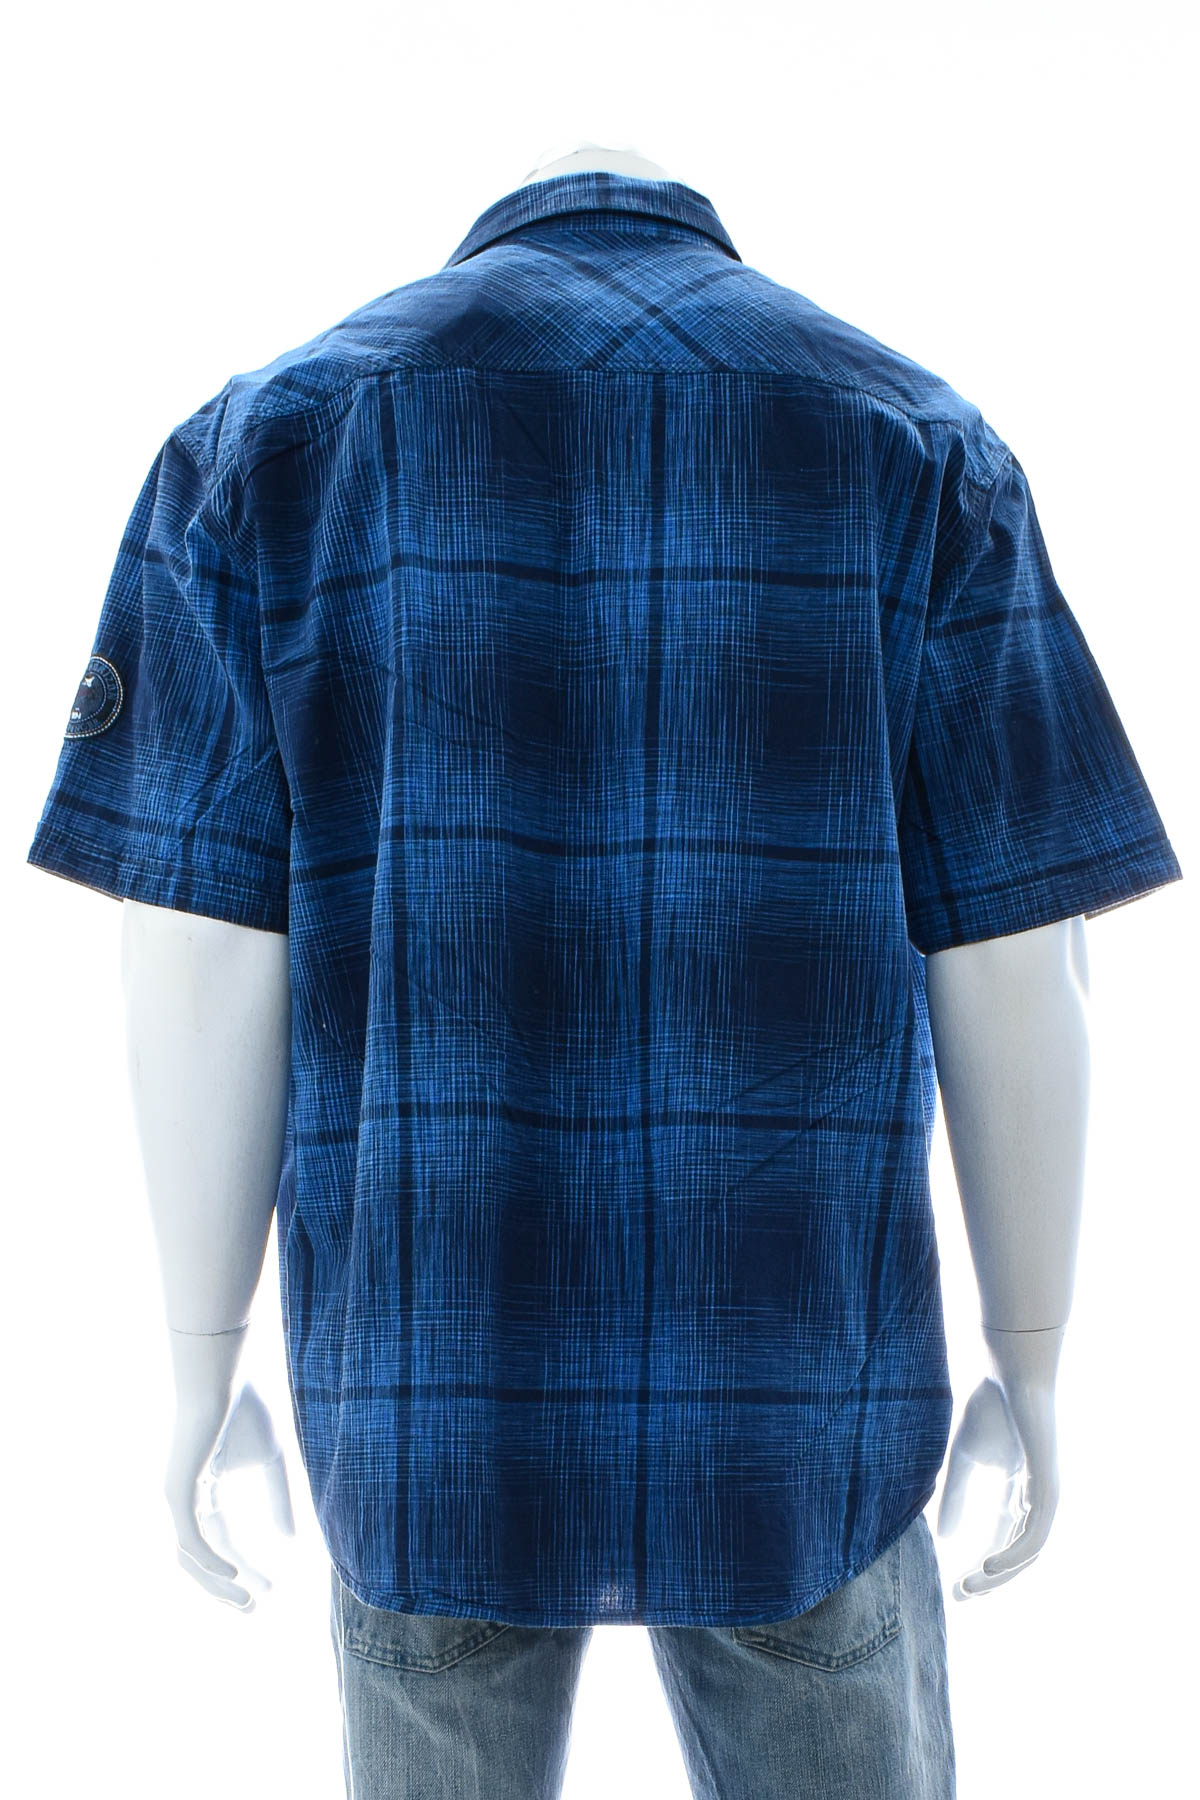 Ανδρικό πουκάμισο - Jim Spencer - 1